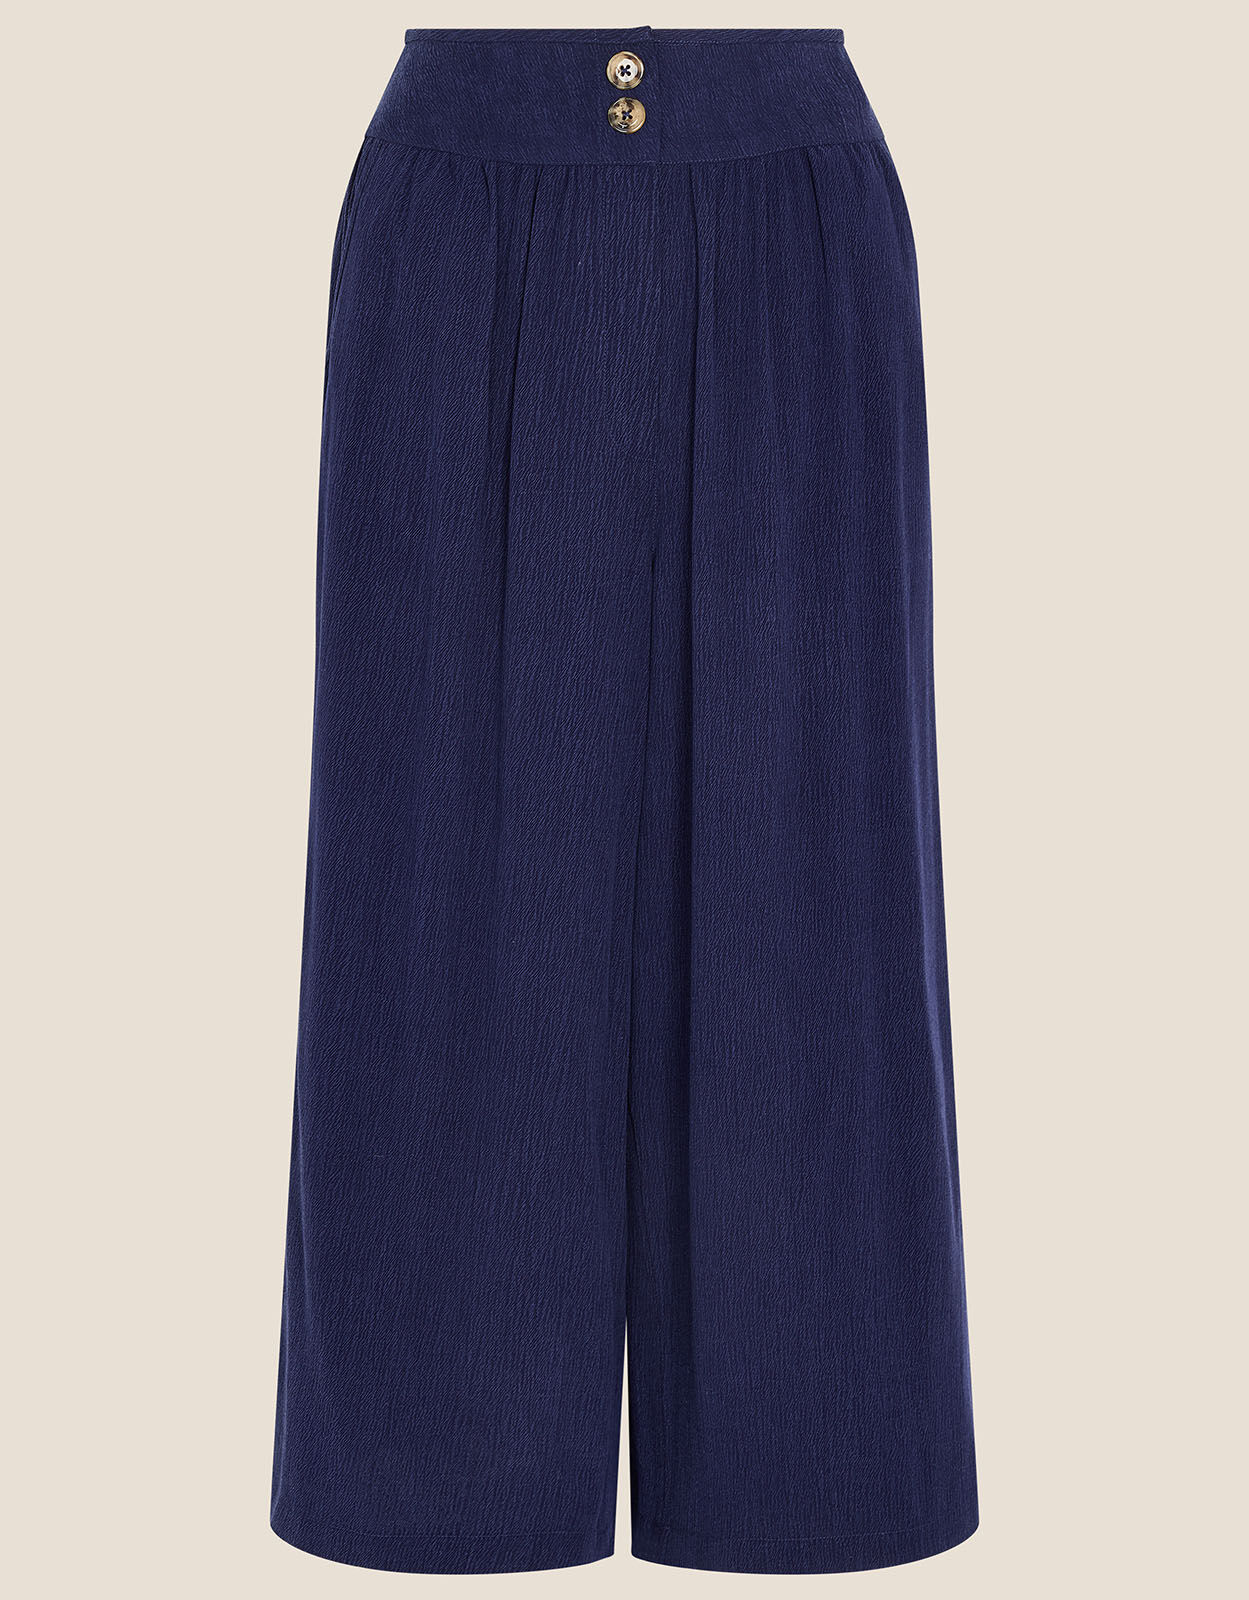 Kenar Women's Pants Navy Blue Pants size 8 Stretch Cropped Trousers BZ |  eBay